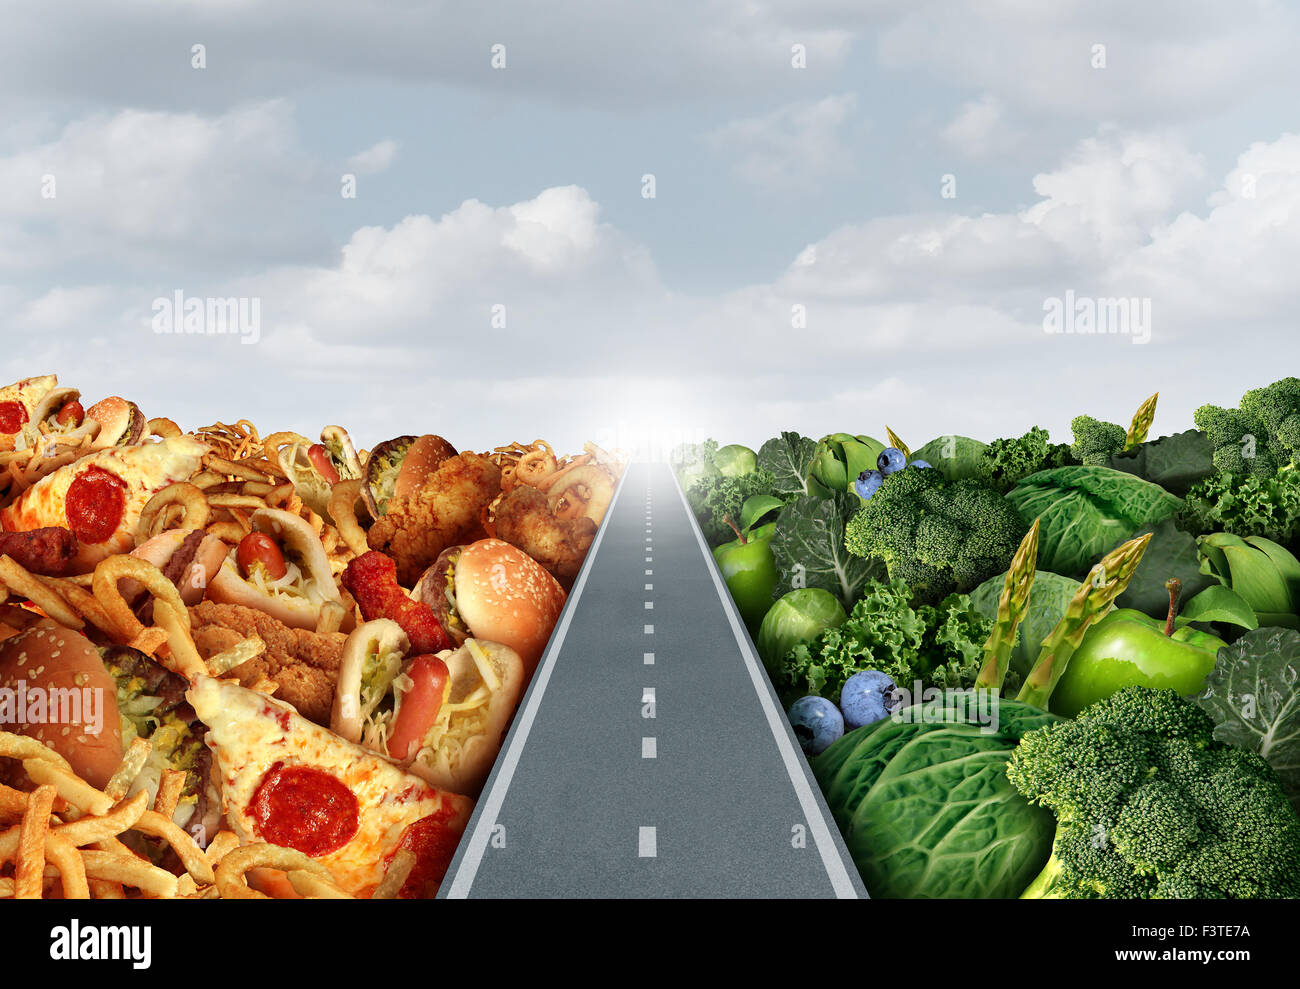 Concepto de estilo de vida de la dieta o nutrición símbolo decisión y la elección de alimentos sanos dilema entre buena fruta y verdura fresca o Foto de stock